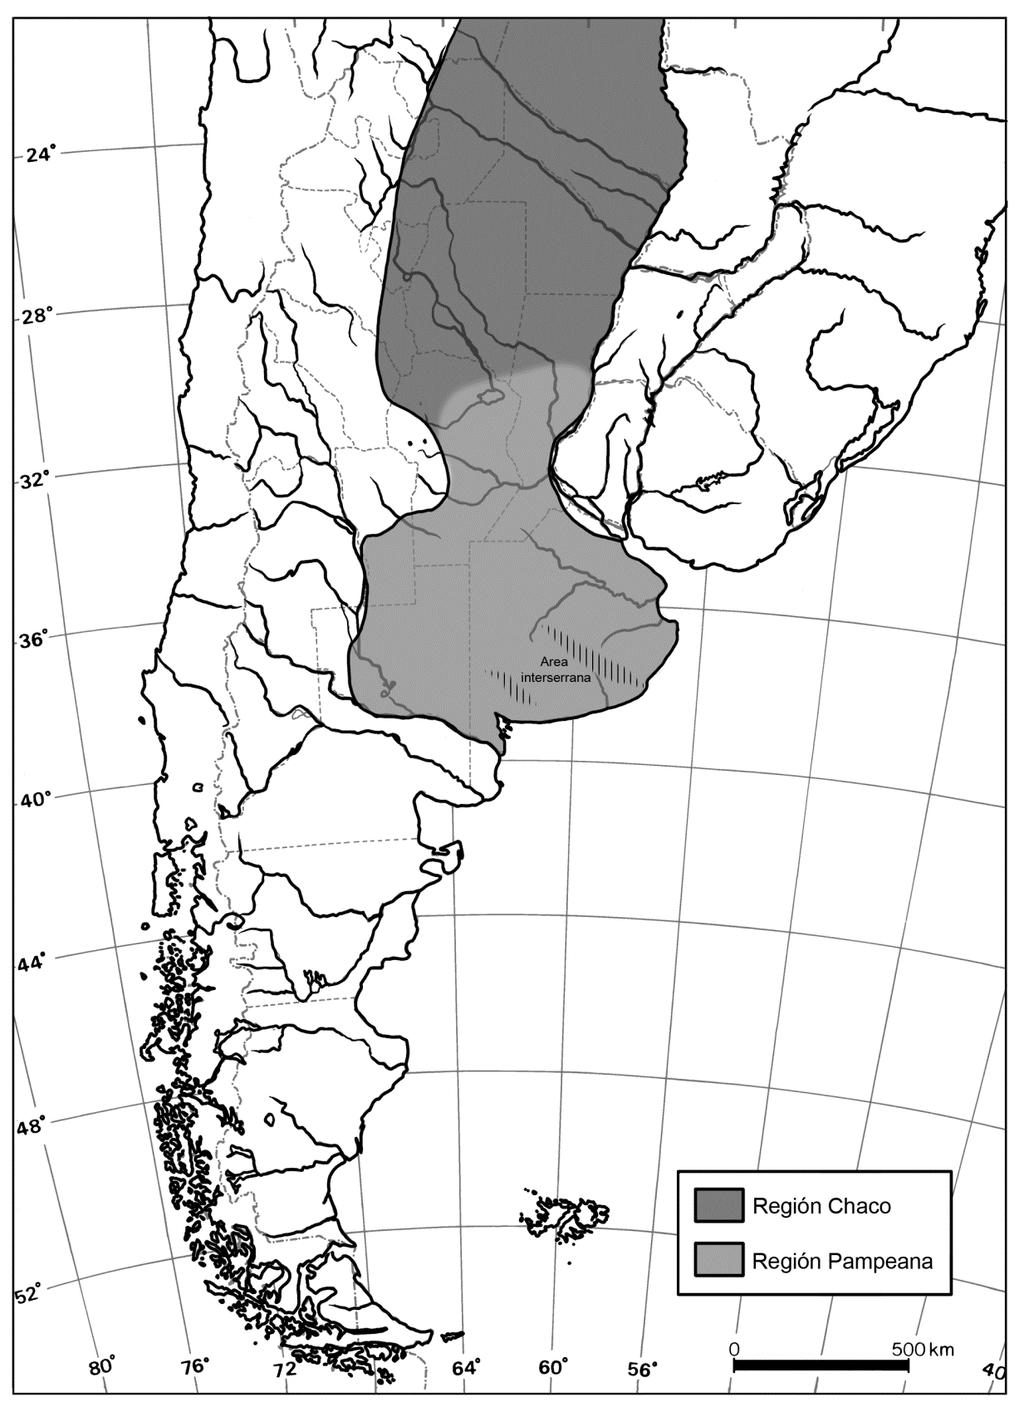 Pampeana estuvo caracterizado por la influencia de los grandes ríos Paraná y Uruguay en una morfología regional de planicies divididas en bloques tectónicos de miles de kilómetros de